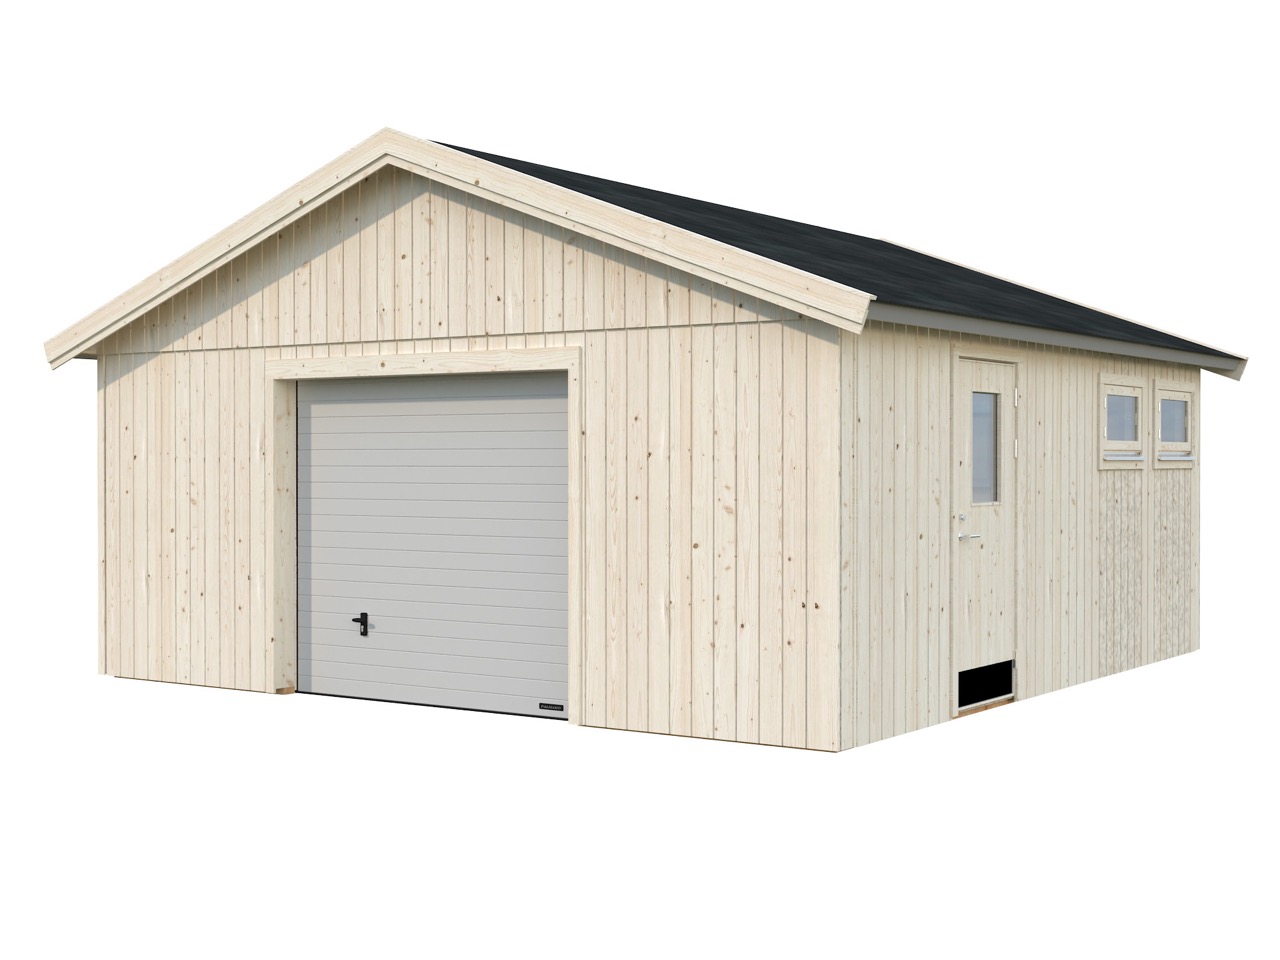 Shop Andre im 28,5 PALMAKO 18mm Garagen m² kaufen aus Holz 557x576cm | von mit günstig Sektionaltor Holz-Garage